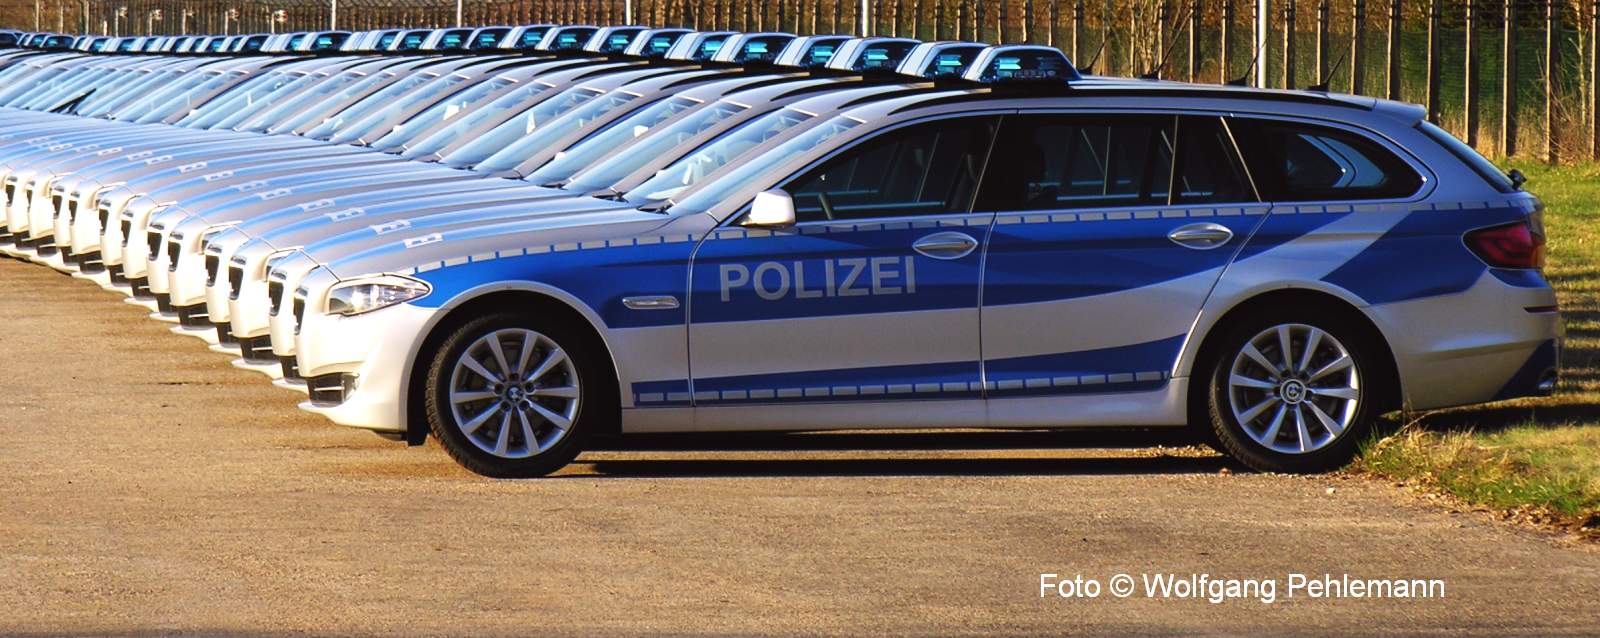 Einsatzfahrzeuge für die Bundespolizei Fabr BMW - keine Fotomontage - Foto 2011 Wolfgang Pehlemann